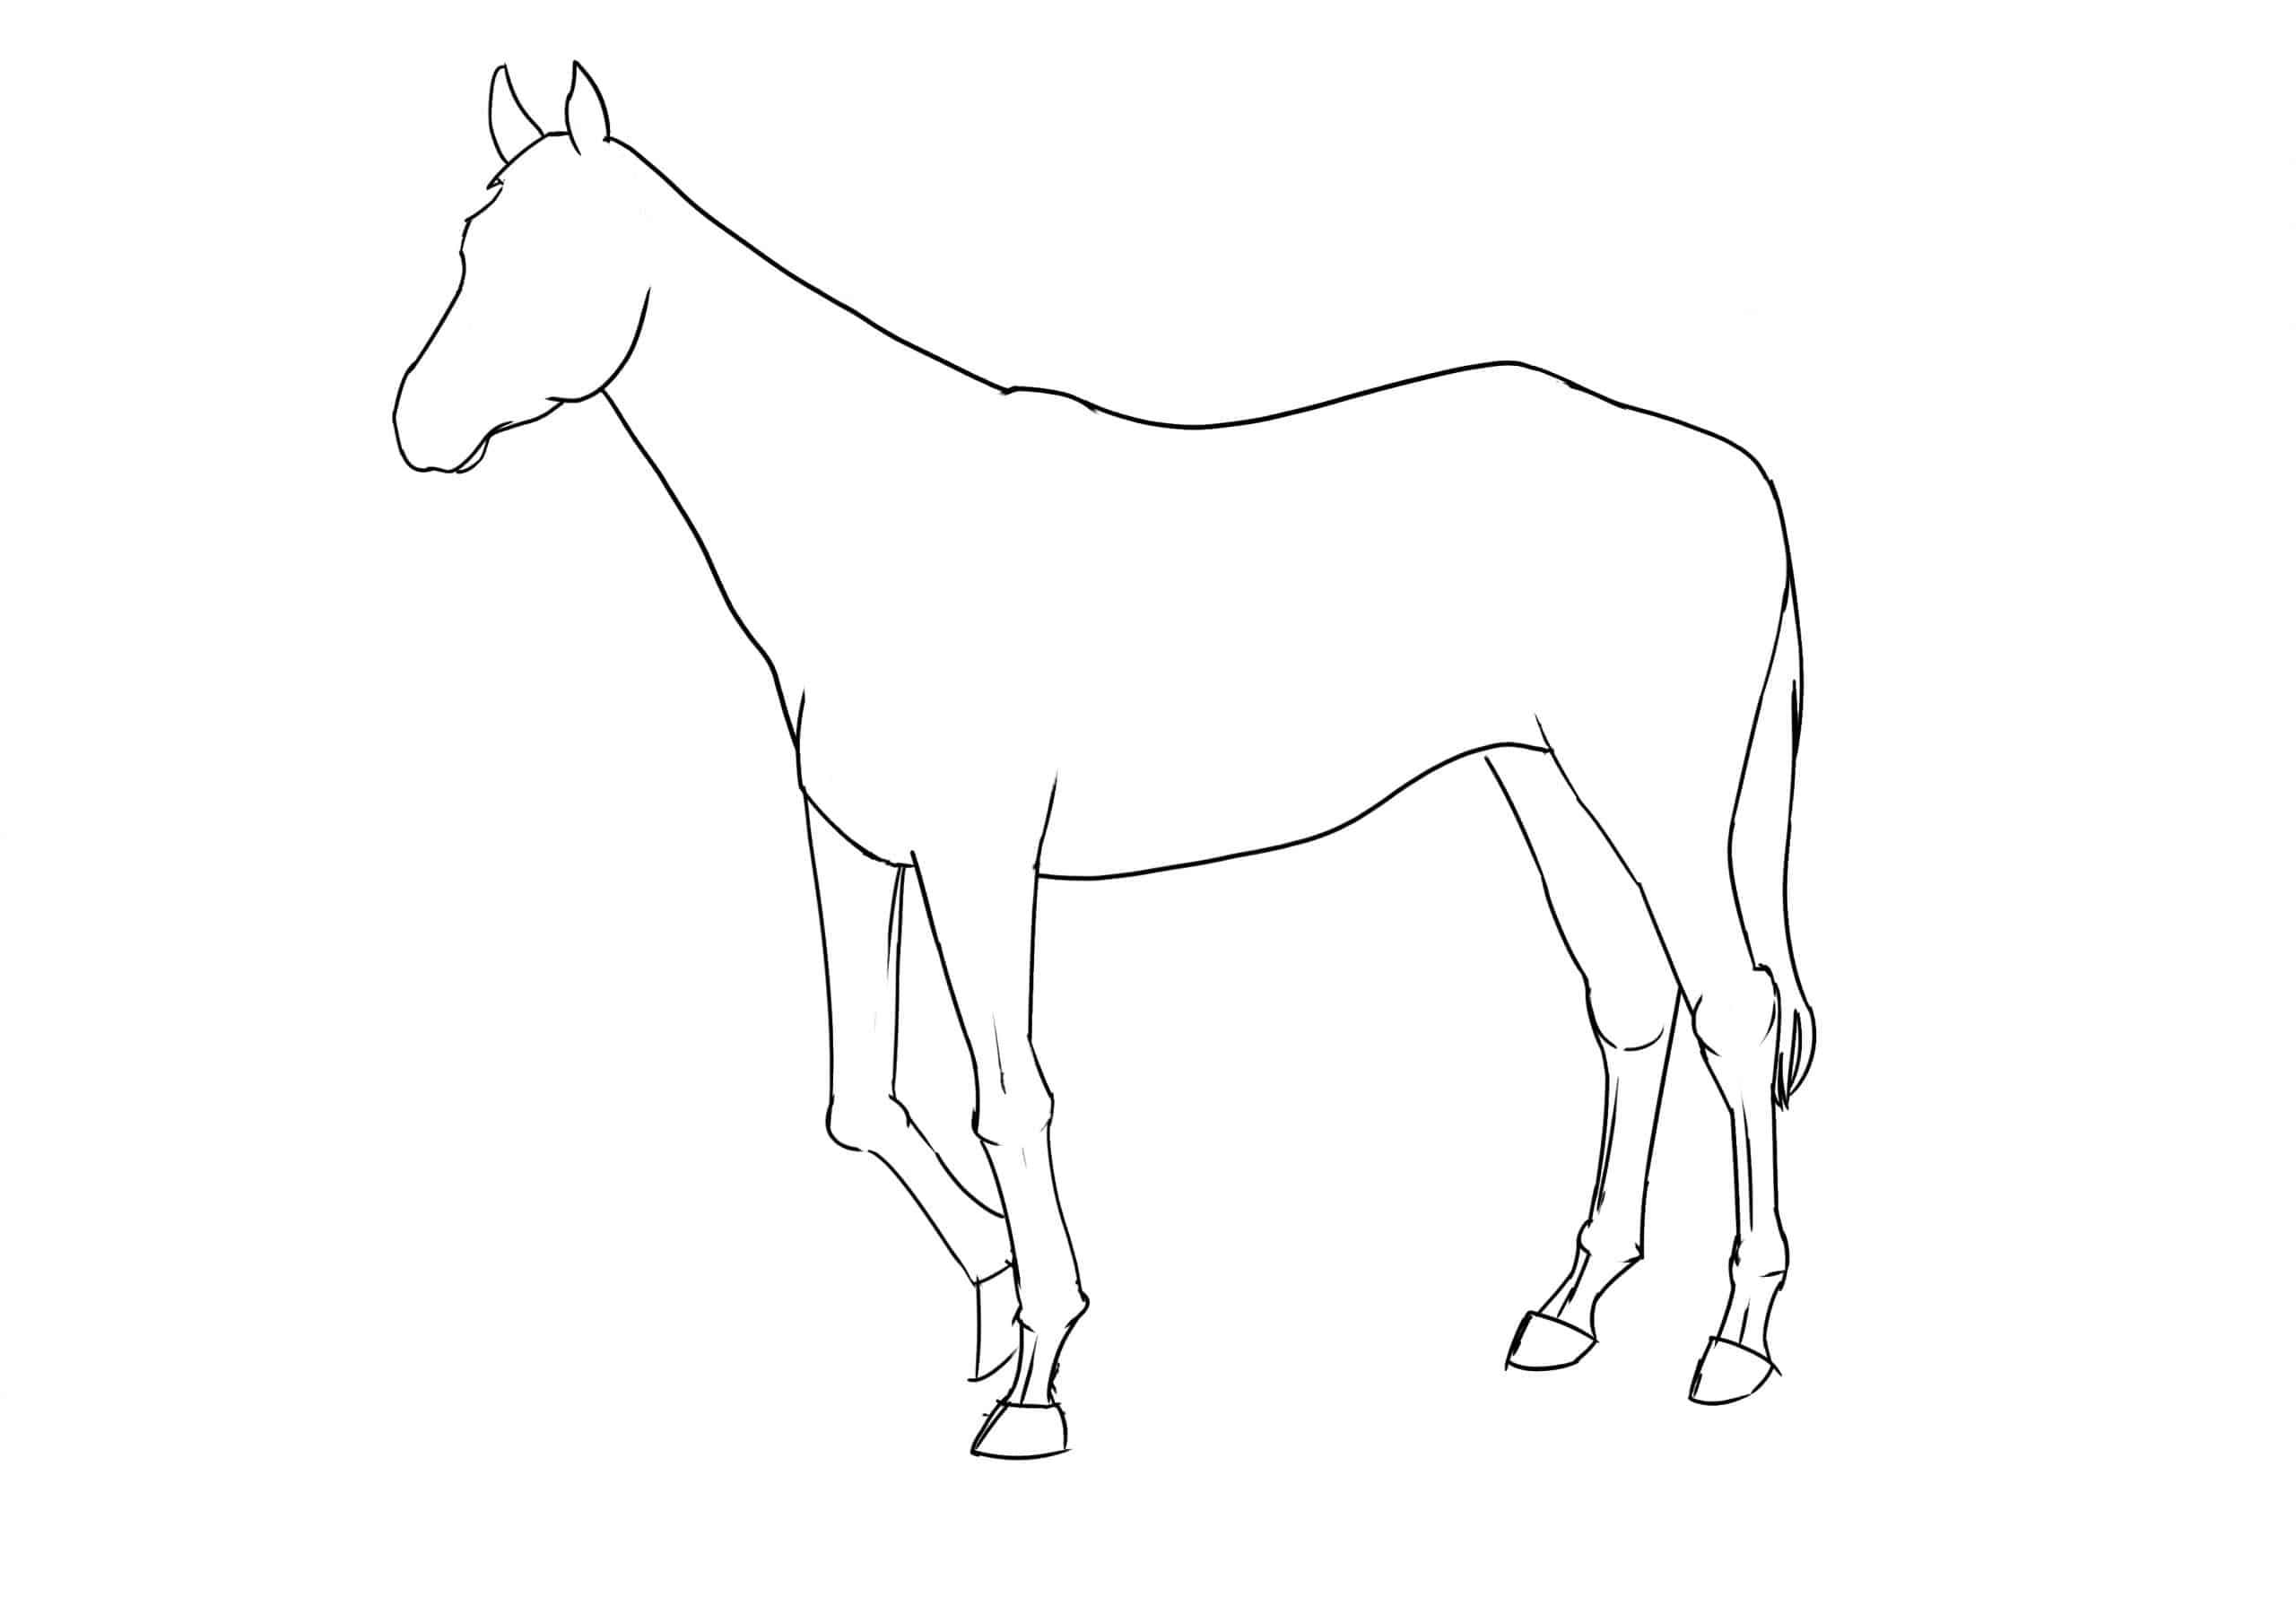 Pferd Zeichnen Lernen - 7 Schritte Für Ein Anatomisch bei Pferdekopf Zeichnen Schritt Für Schritt